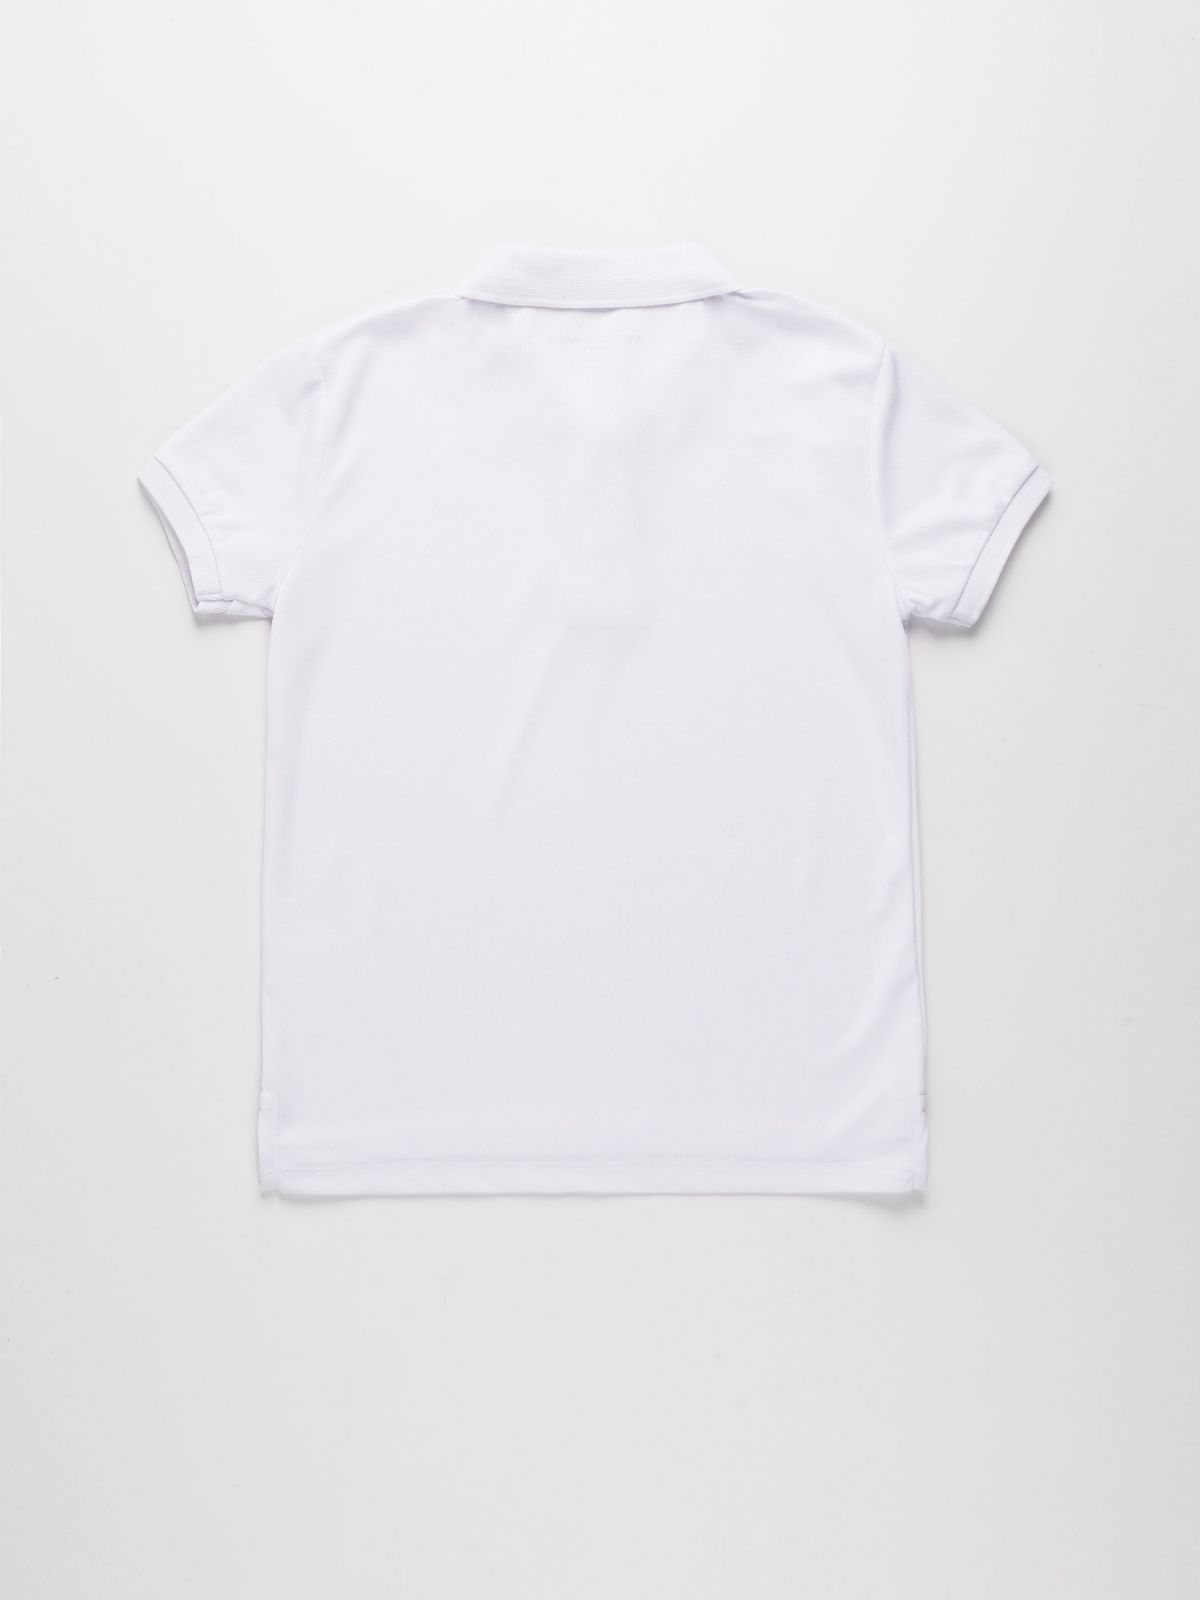  חולצת פולו עם הדפס לוגו / בנים של AMERICAN EAGLE